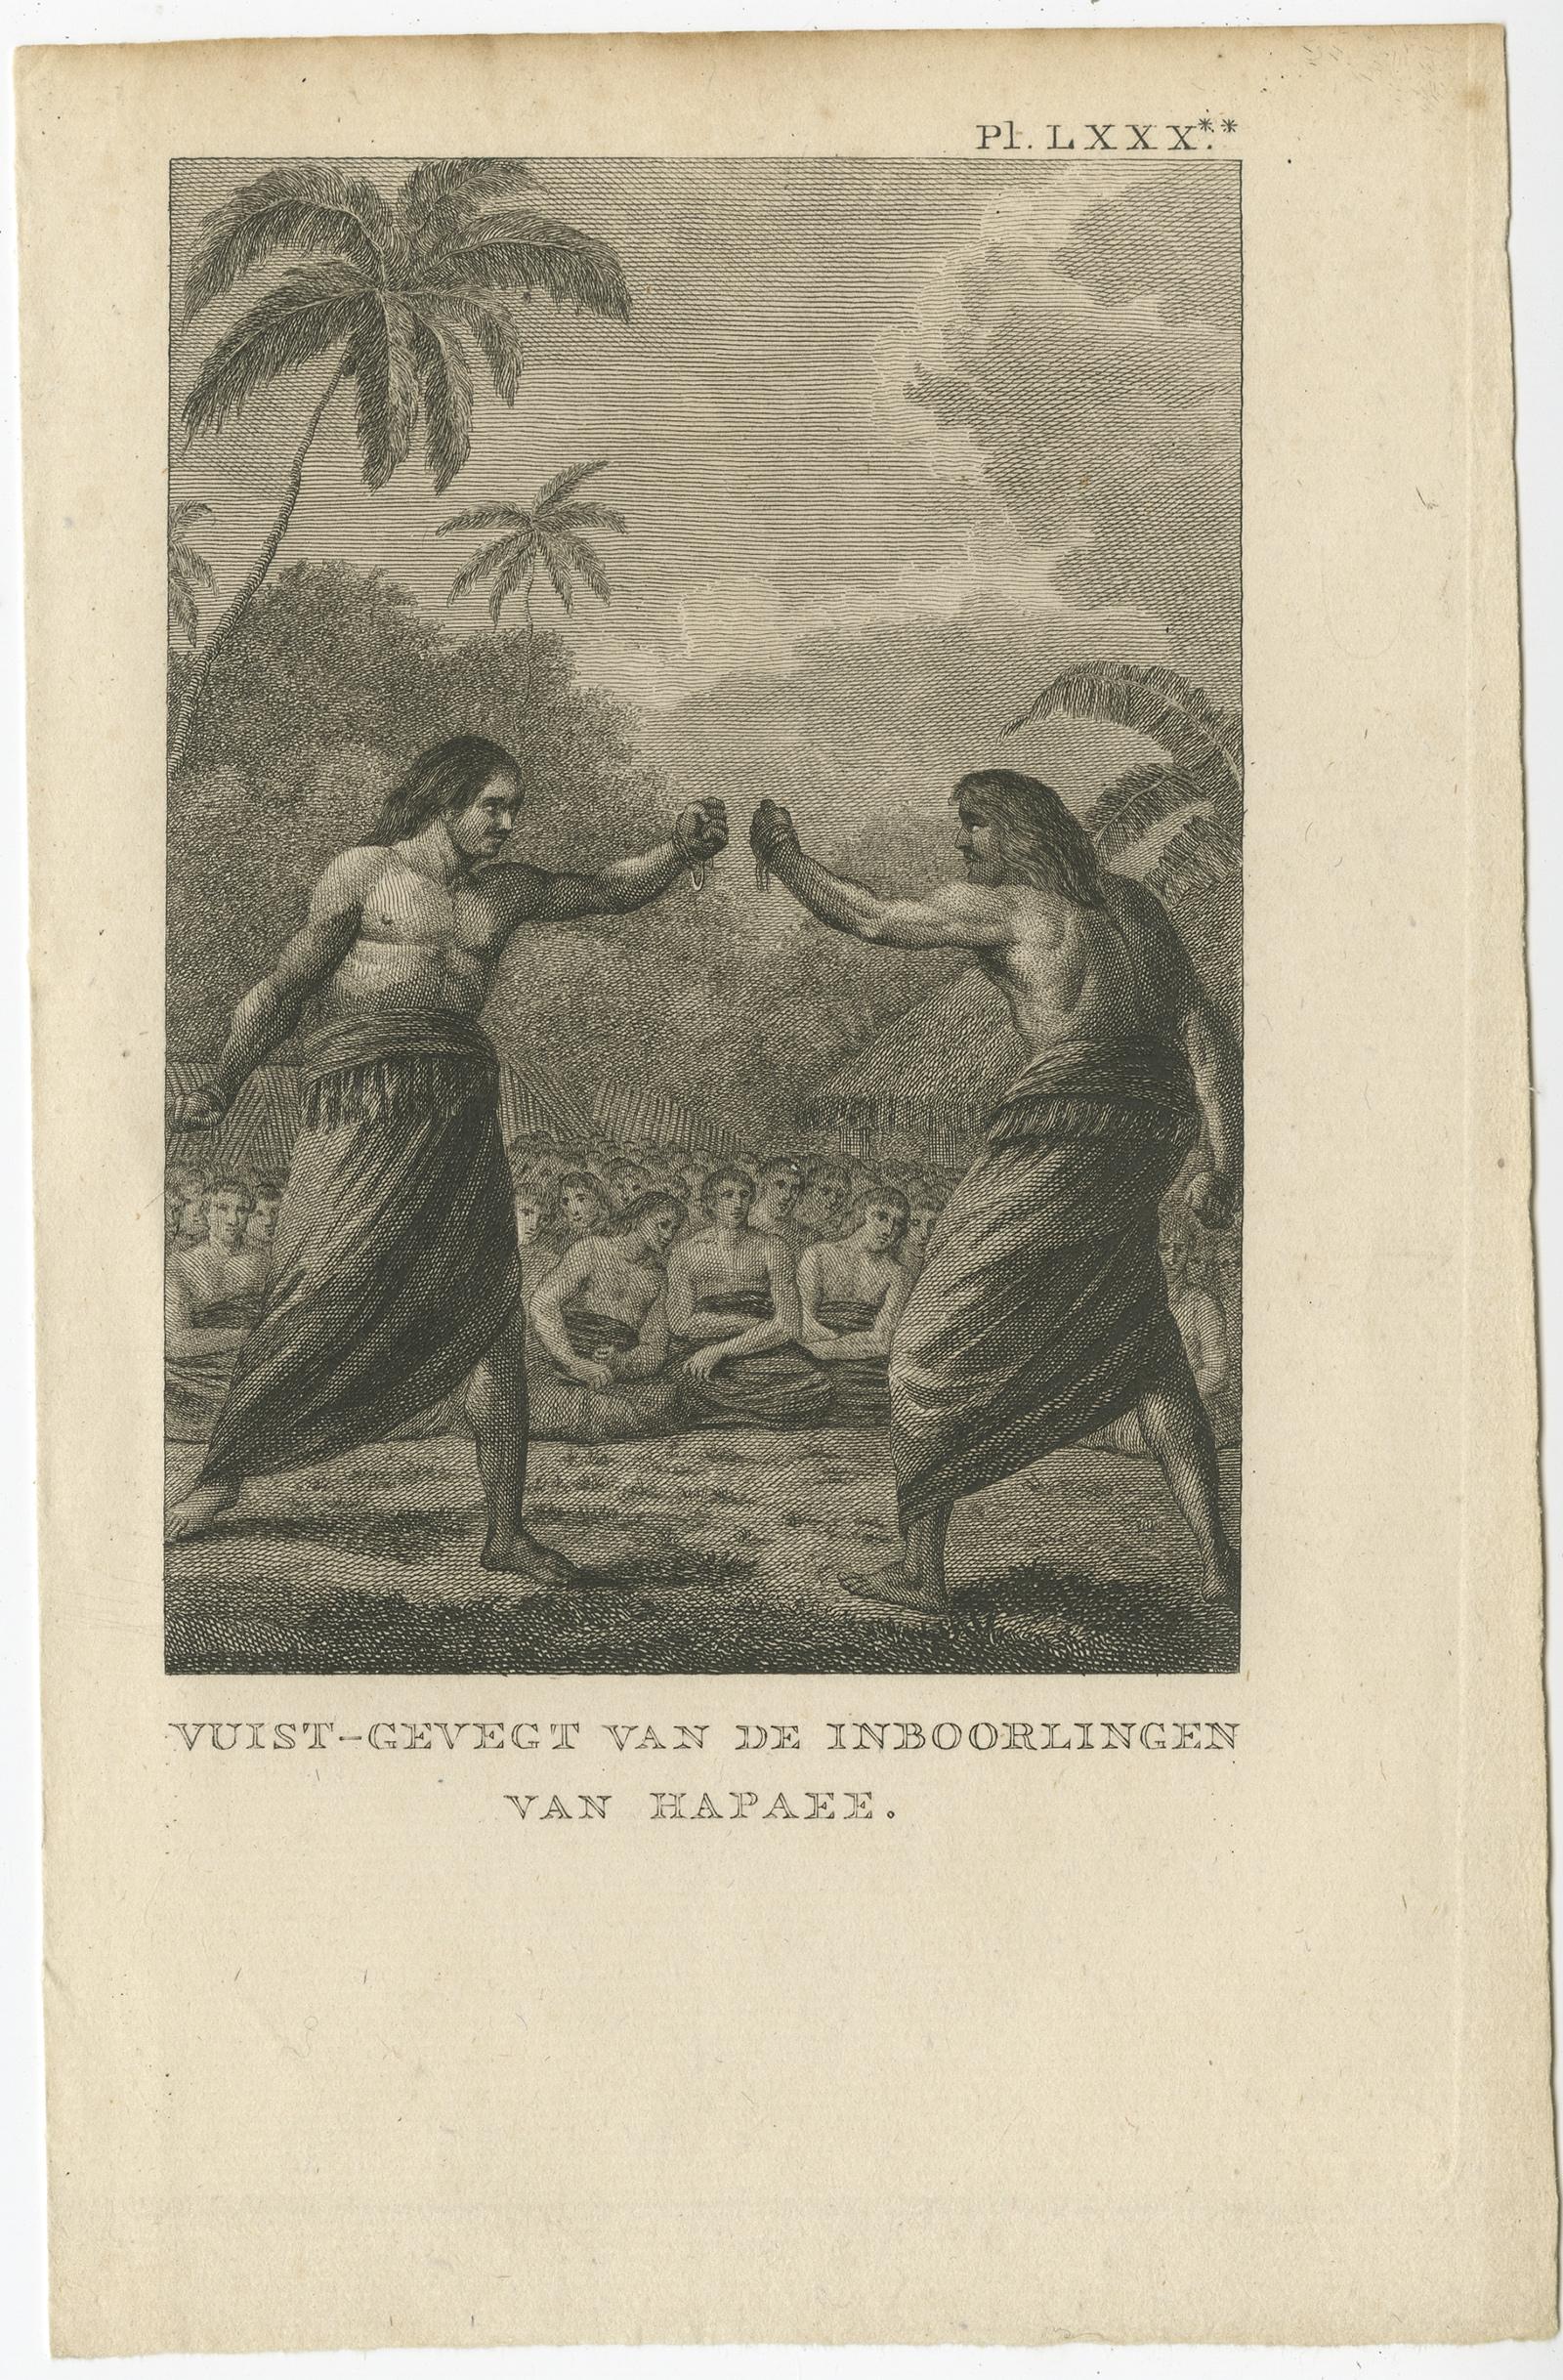 Antiker Druck mit dem Titel 'Vuist-Gevegt van de Inboorlingen van Hapaee'. 

Antiker Druck, der einen Kampf zwischen zwei Eingeborenen von Hapaee zeigt. Stammt aus 